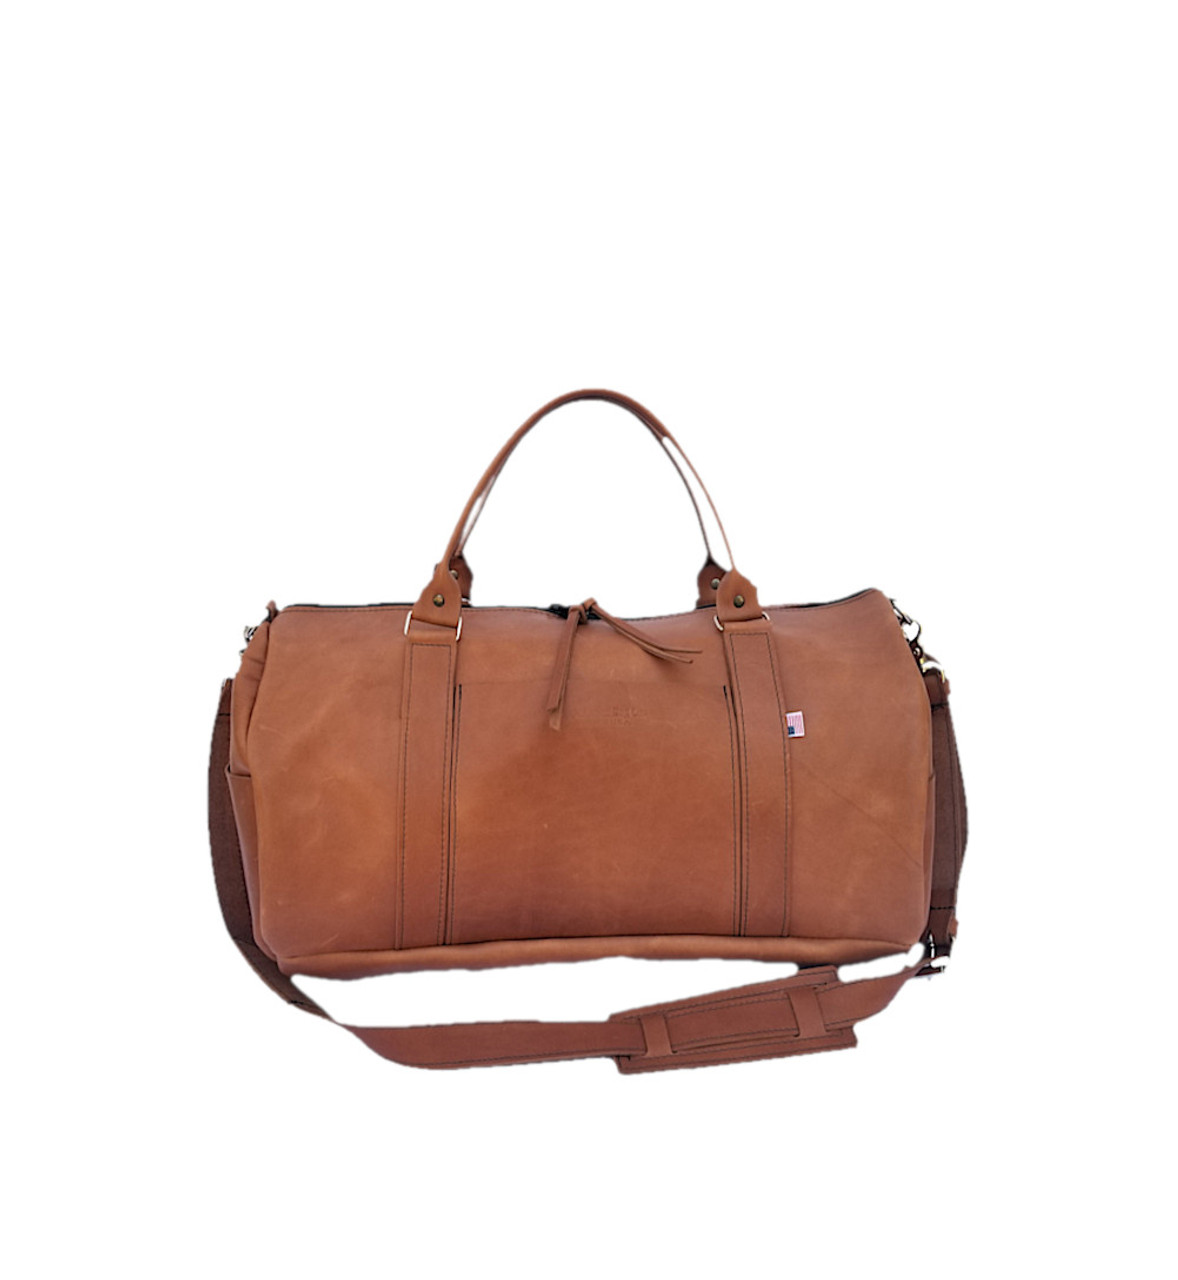 Unisex Plain Leather Training Bag, Size: 12 X 16